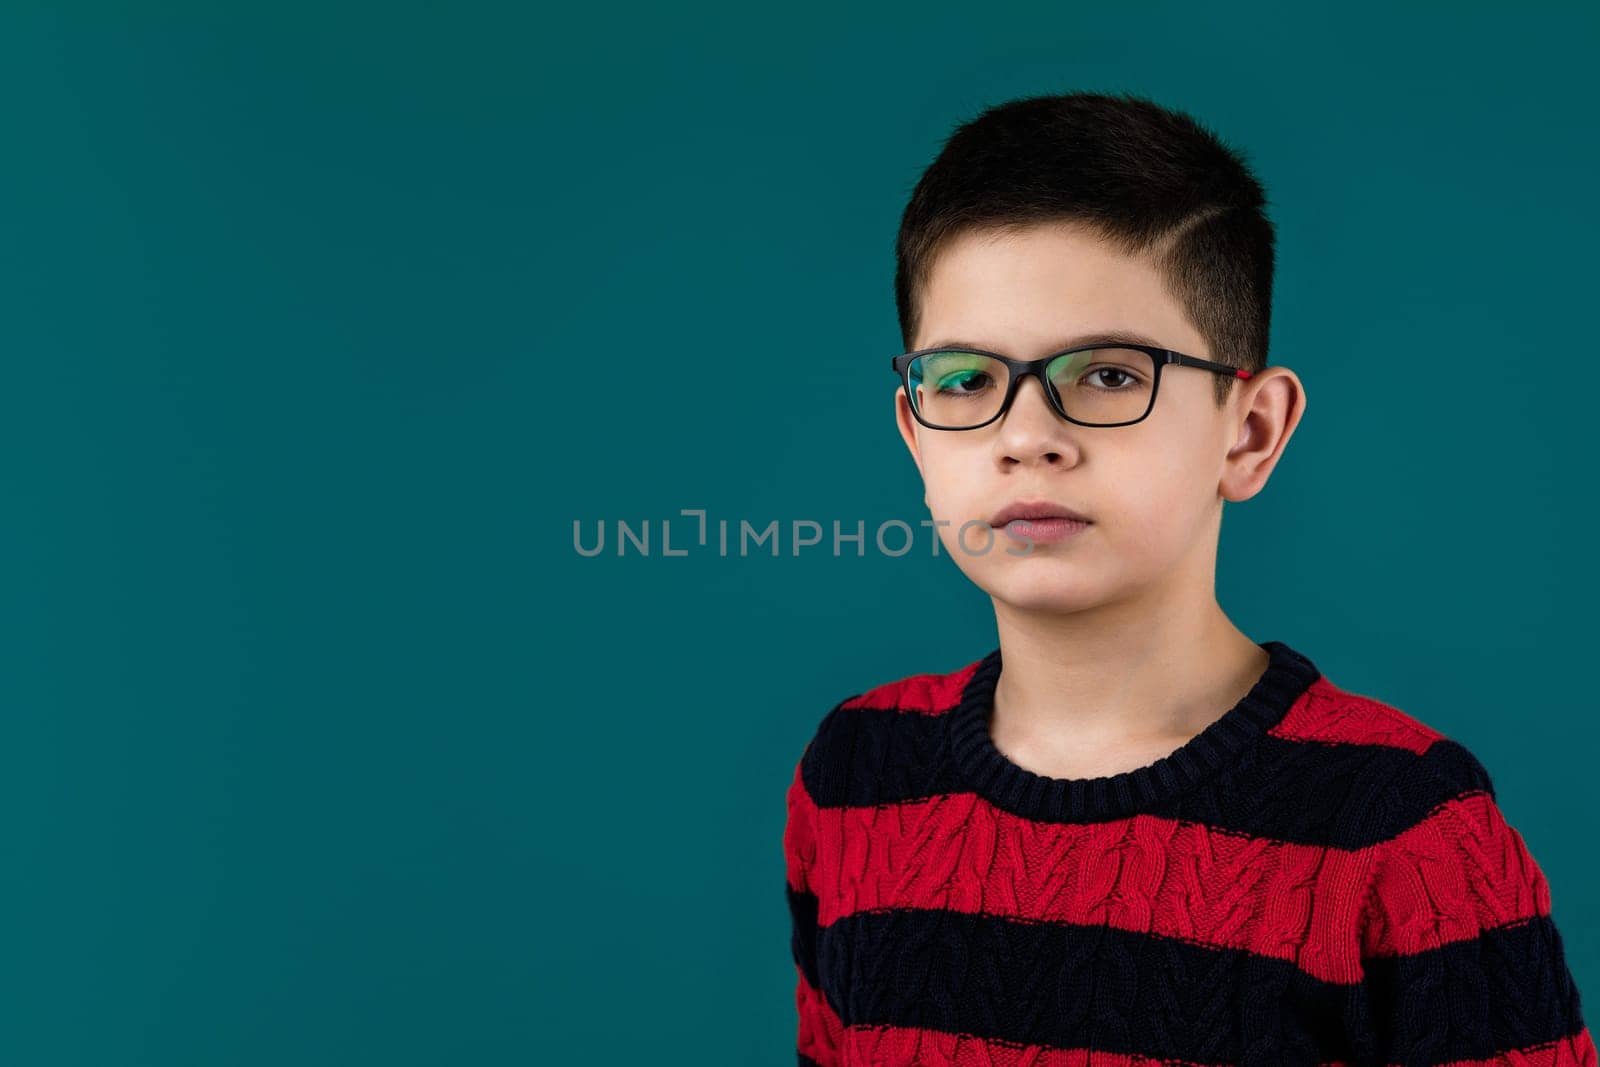 little cheerful school boy wearing glasses by erstudio